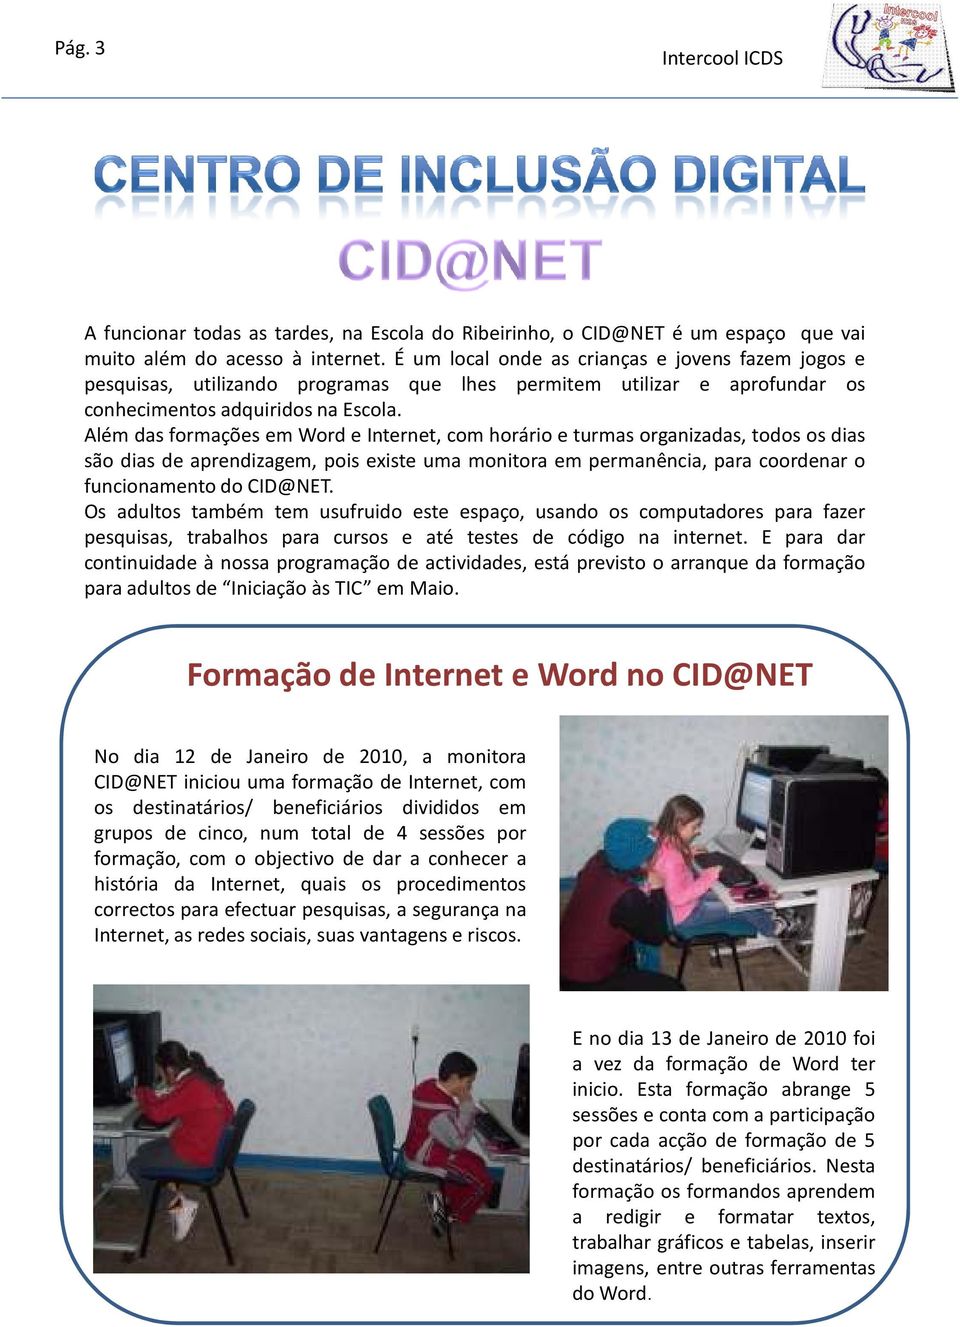 Além das formações em Word e Internet, com horário e turmas organizadas, todos os dias são dias de aprendizagem, pois existe uma monitora em permanência, para coordenar o funcionamento do CID@NET.